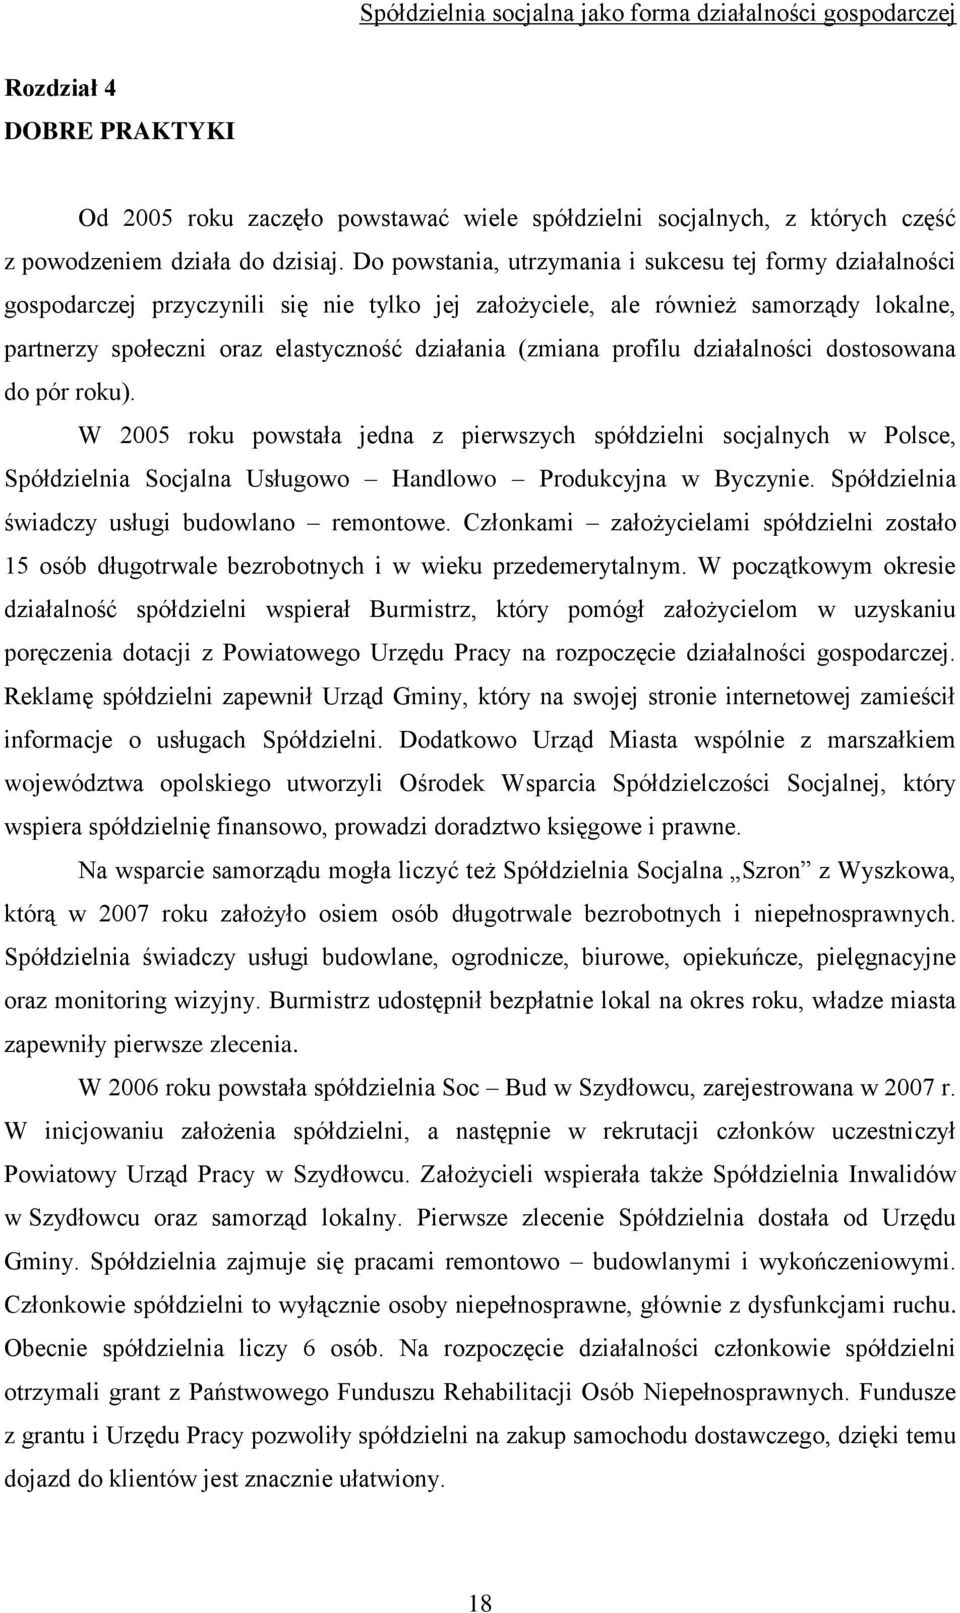 (zmiana profilu działalności dostosowana do pór roku). W 2005 roku powstała jedna z pierwszych spółdzielni socjalnych w Polsce, Spółdzielnia Socjalna Usługowo Handlowo Produkcyjna w Byczynie.